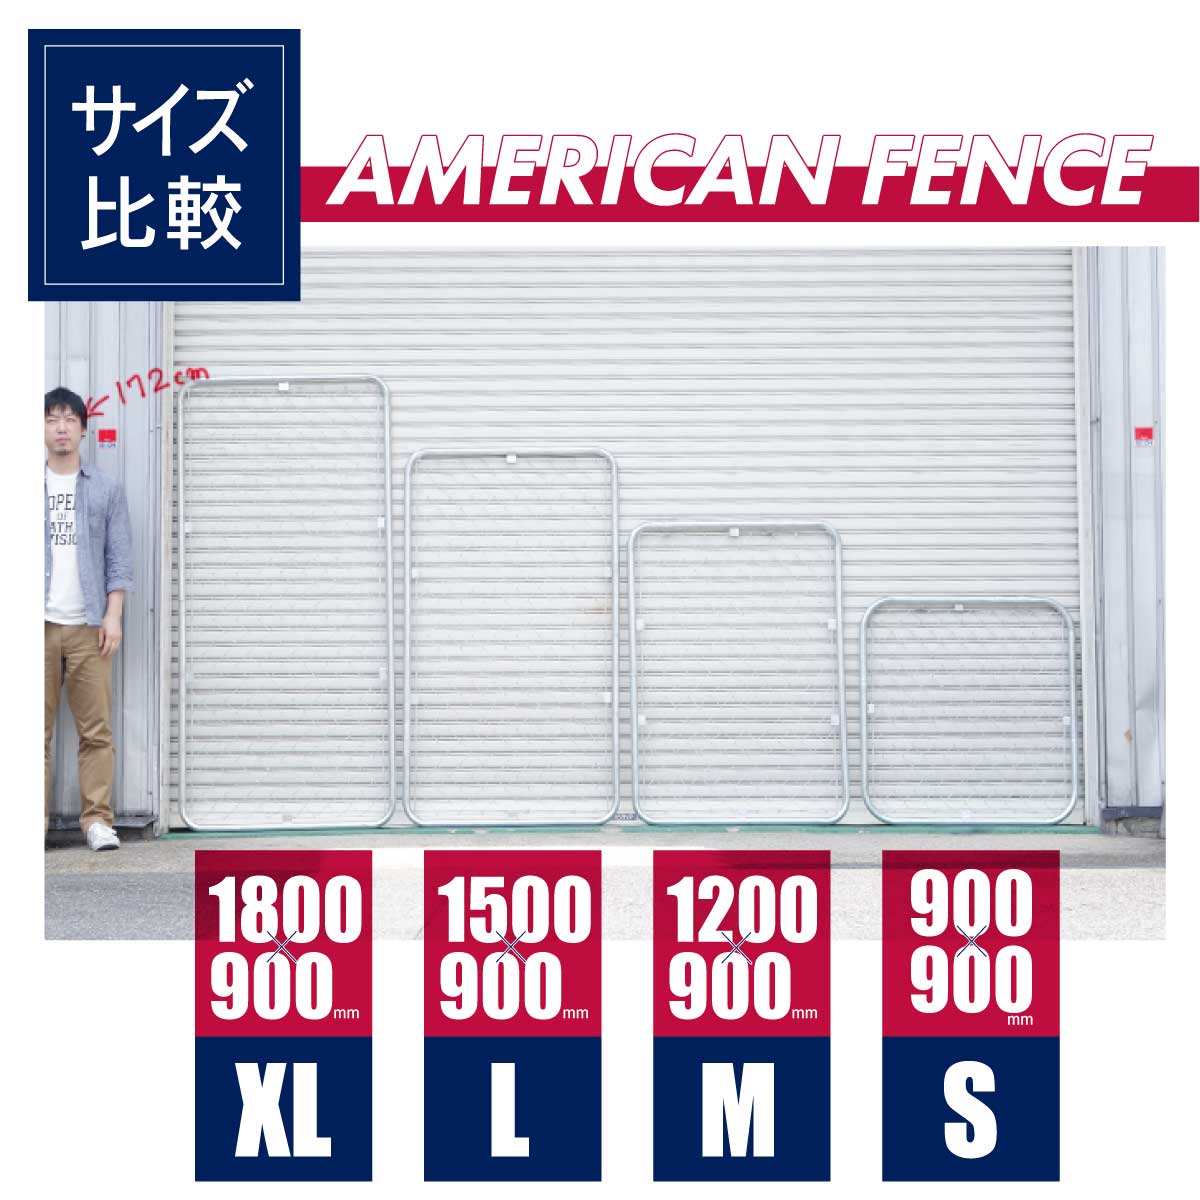 アメリカンフェンスは全部で4種類。Sサイズは900×900mm、Mサイズは1200×900mm、Lサイズは1500×900mm、XLサイズは1800×900mm